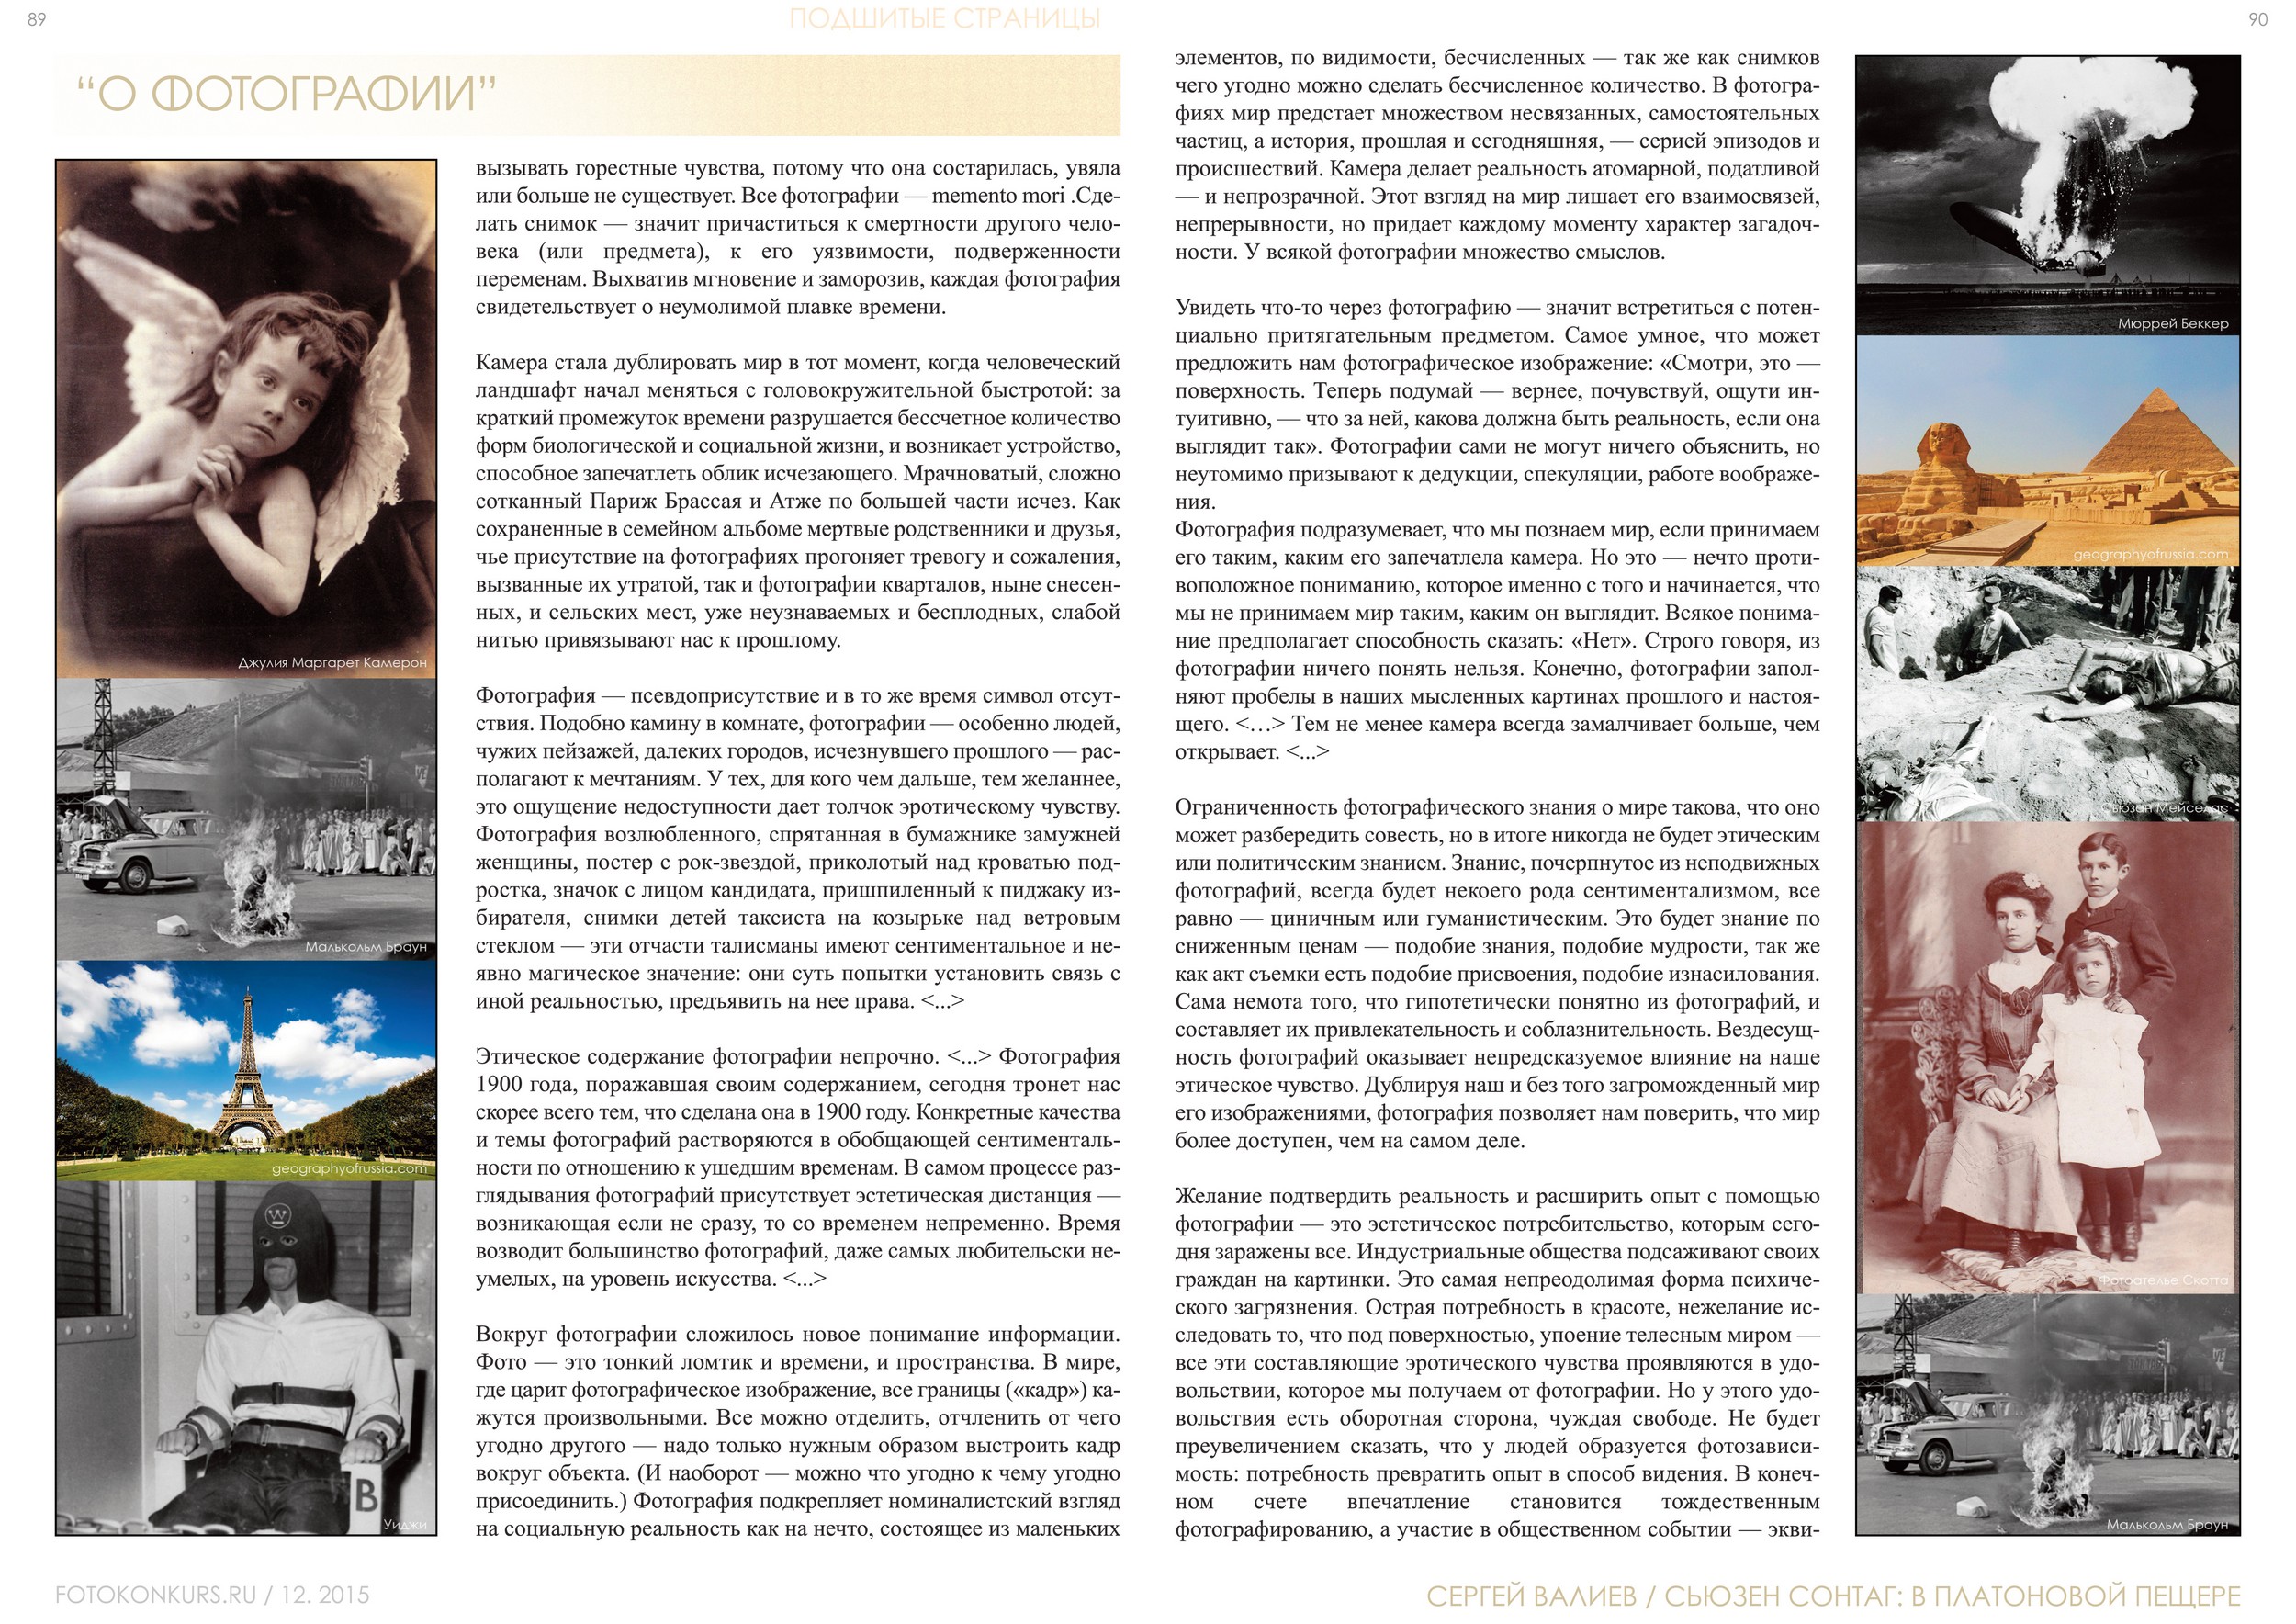 Журнал Фотоконкурс.ру, Выпуск 2, декабрь-2015, страница 89-90